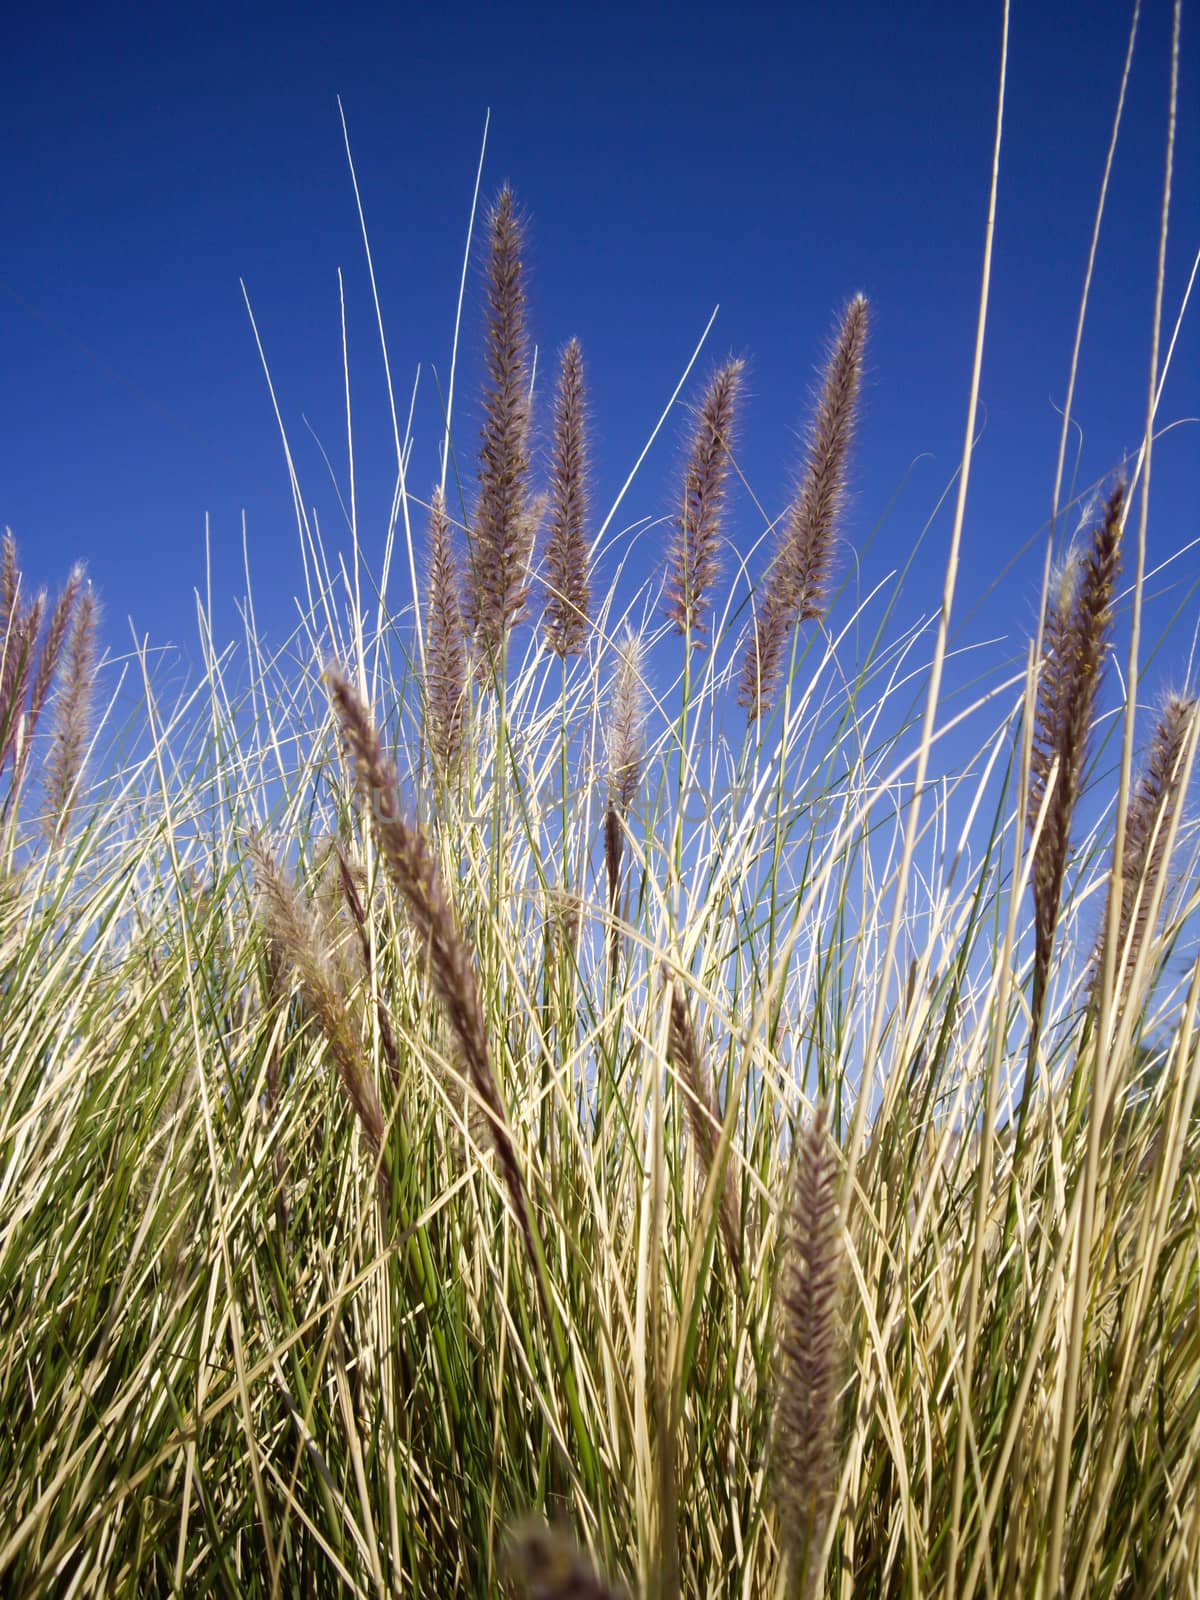 Wild desert grasses by emattil